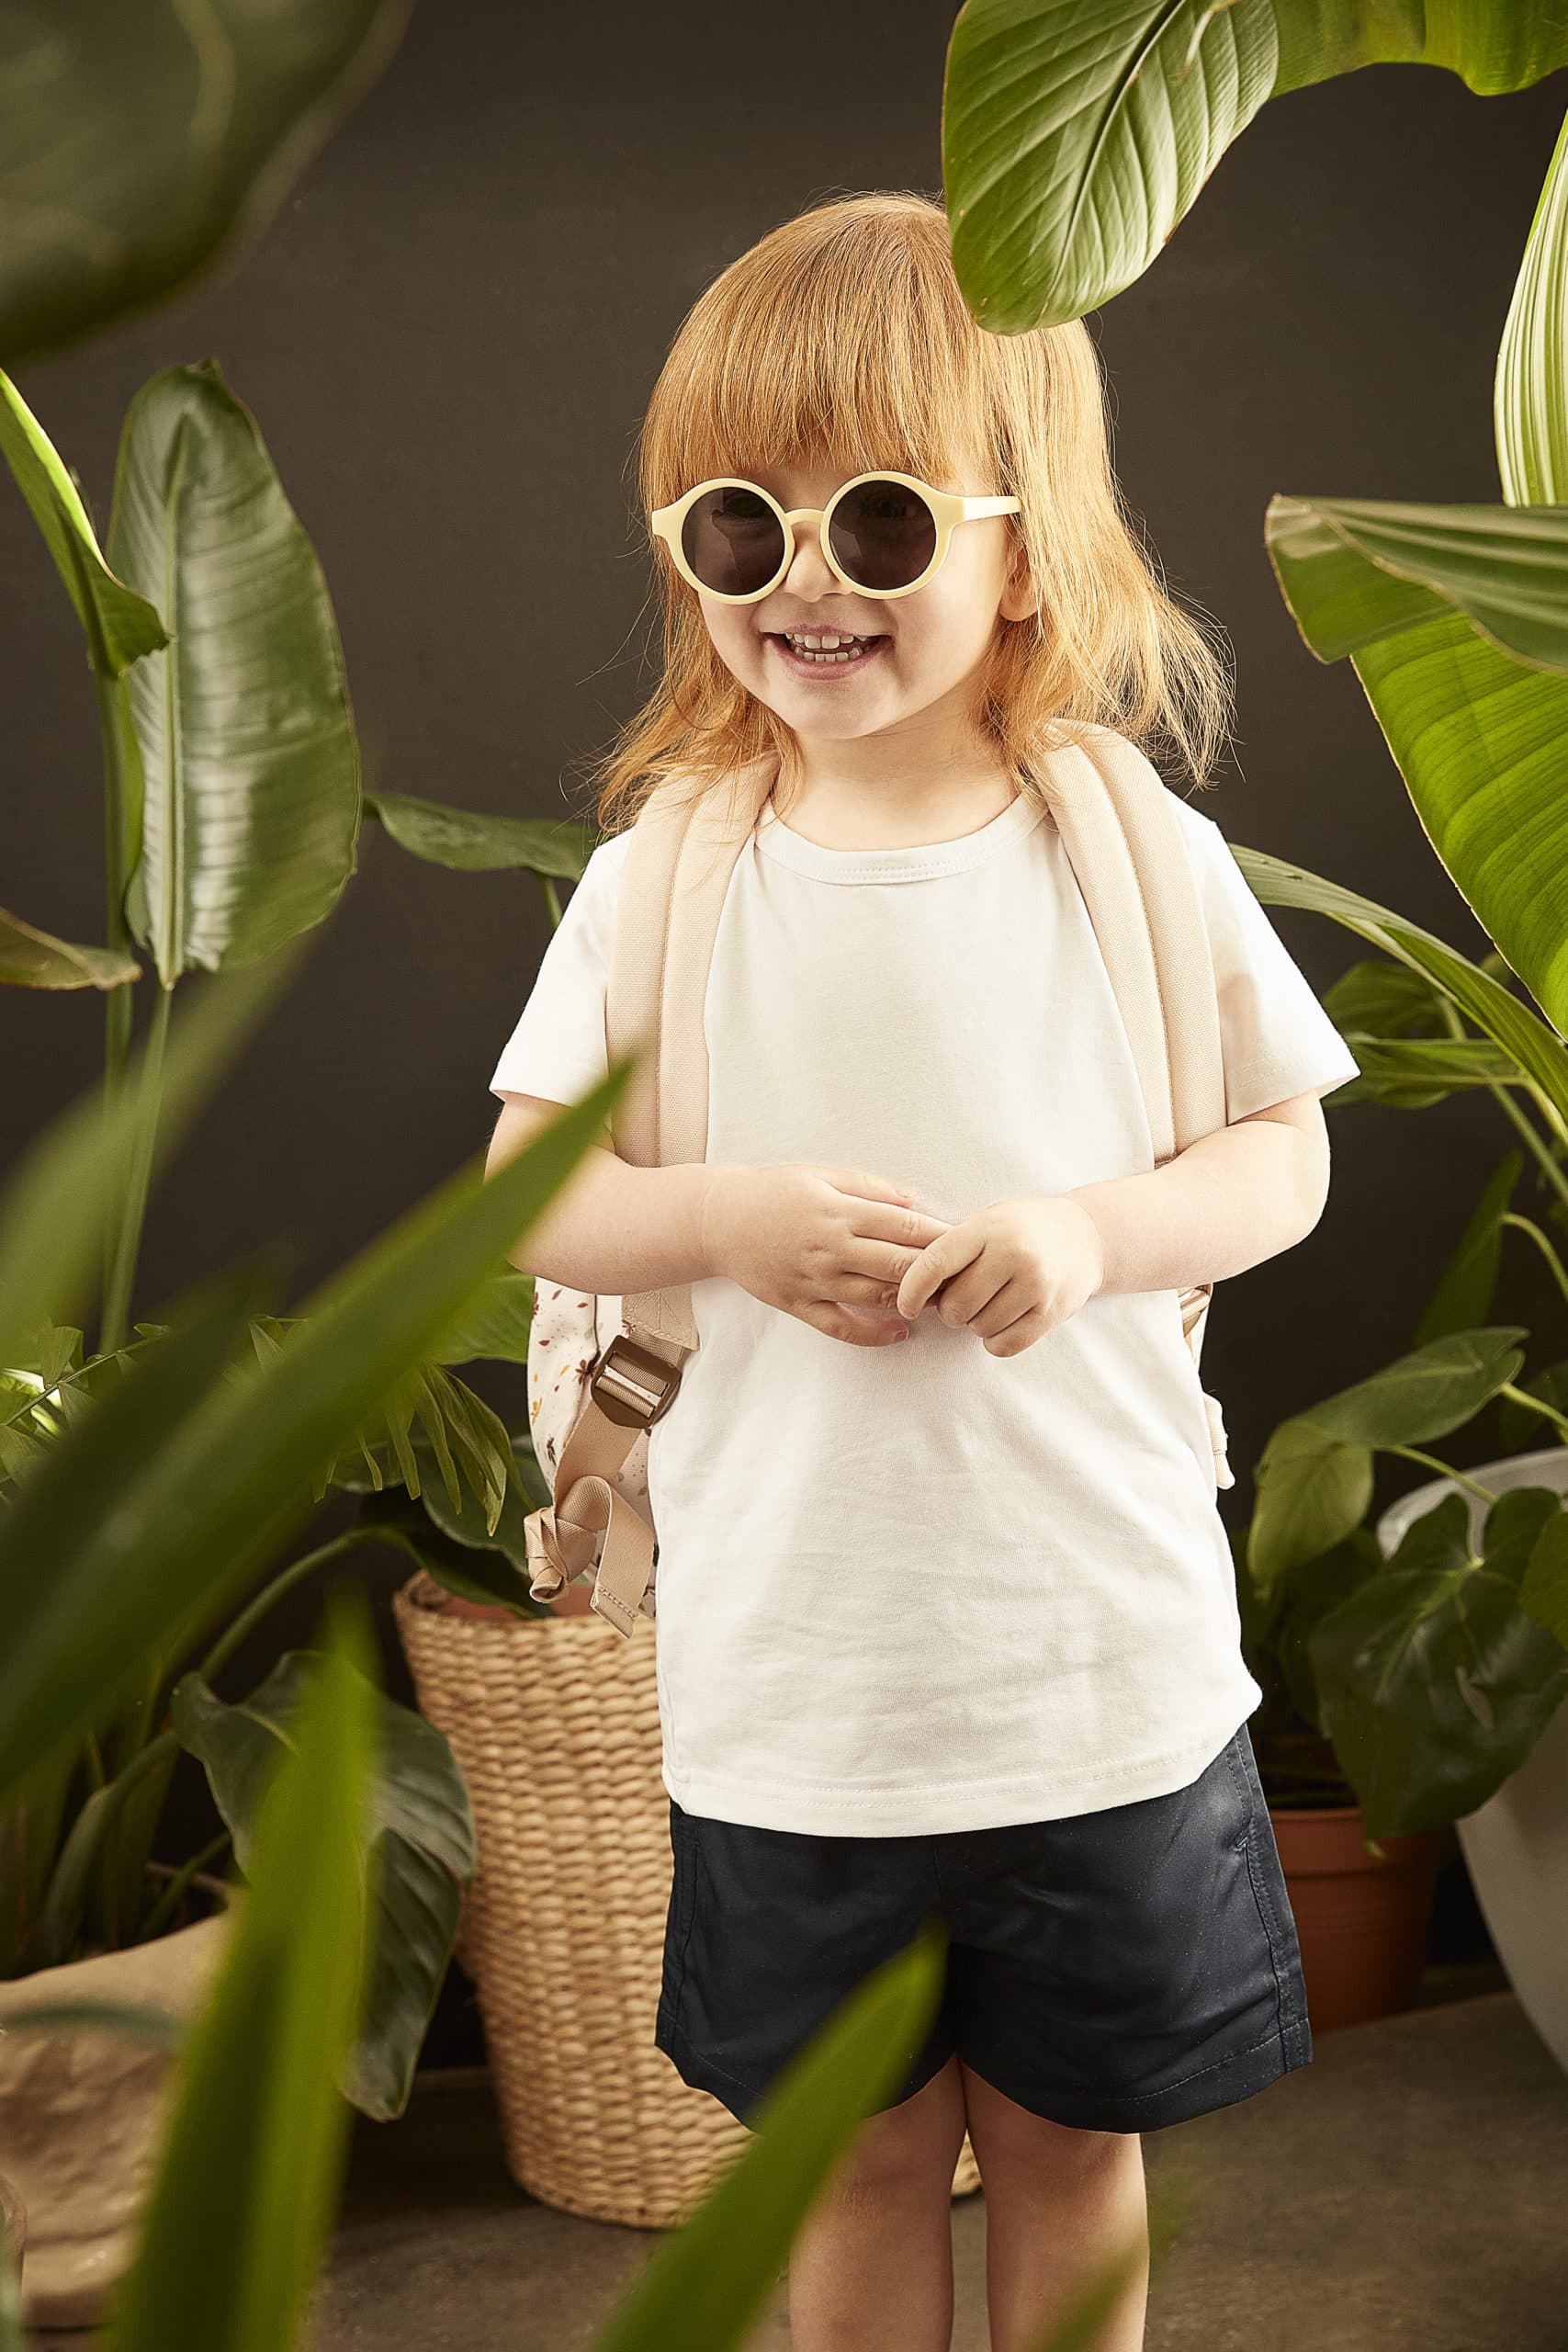 Kindersonnenbrille aus recyceltem Plastik - Pale Banana | Nachhaltige Kindersonnenbrille aus recyceltem Plastik, Farbe: Pale Banana | Kinder von 4 bis 10 Jahren